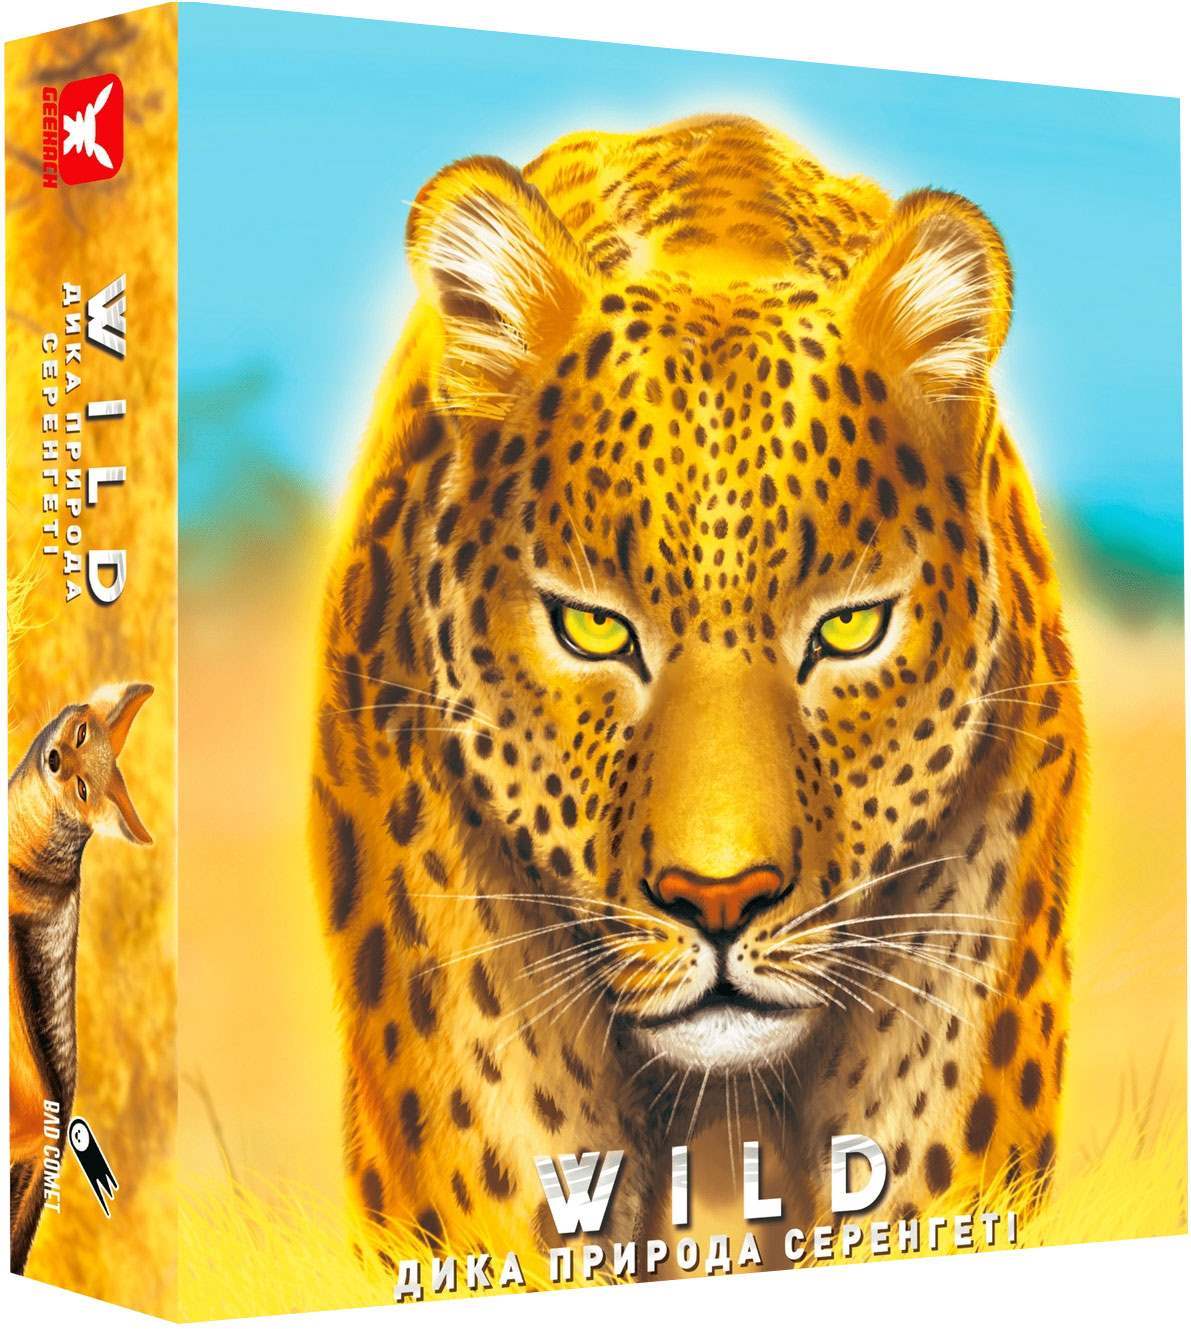 Настільна гра Дика природа. Серенгеті (Wild: Serengeti), бренду Geekach Games, для 1-4 гравців, час гри < 60хв. - KUBIX